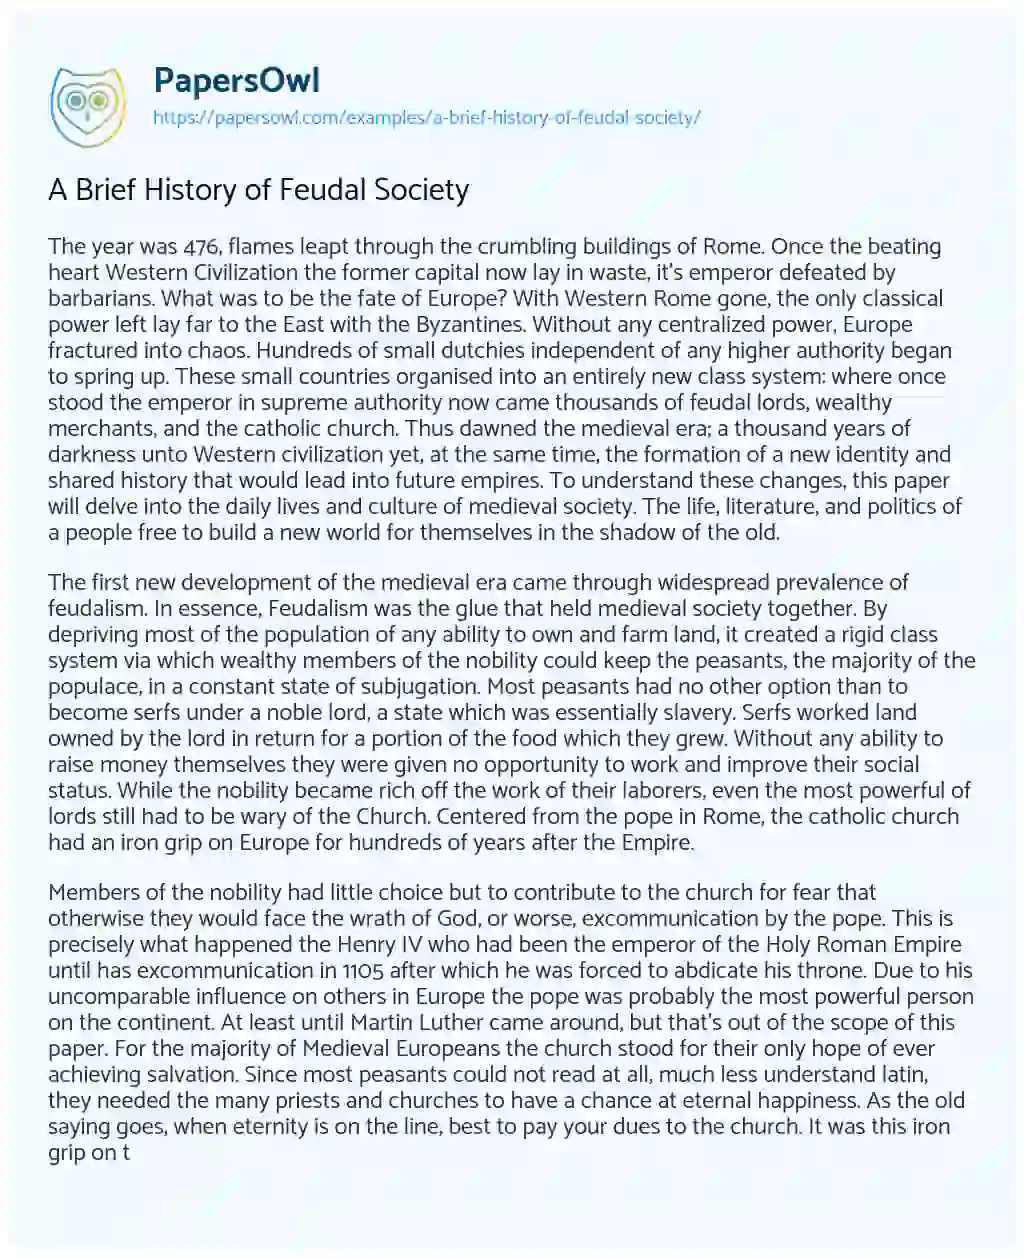 A Brief History of Feudal Society essay